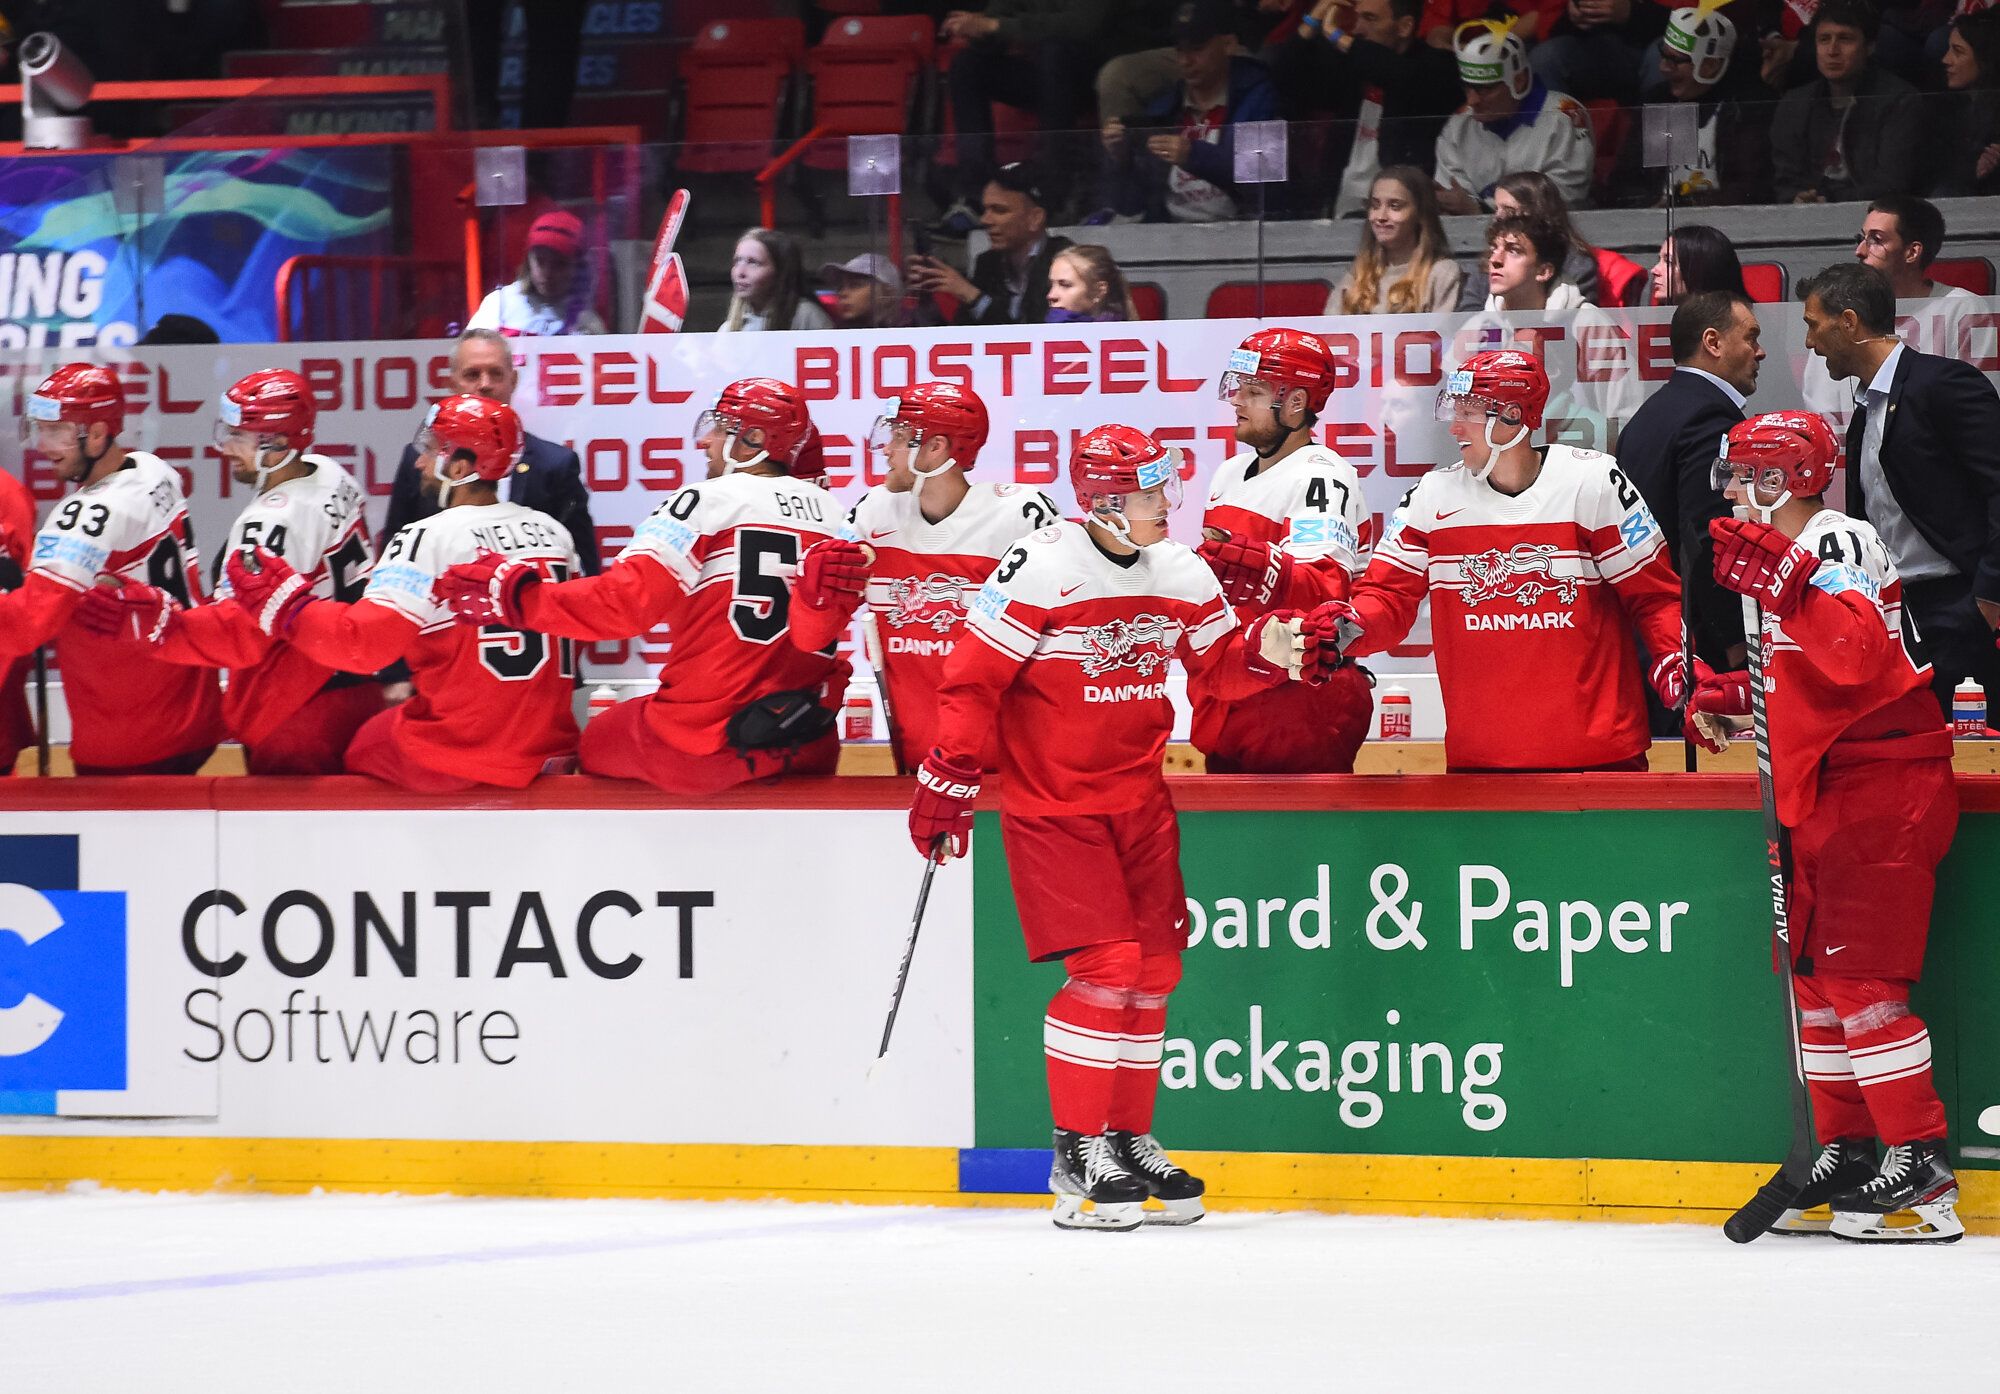 Словакия — Дания прогноз на матч 24 мая на ЧМ-2022 по хоккею: ставки и коэффициенты на игру